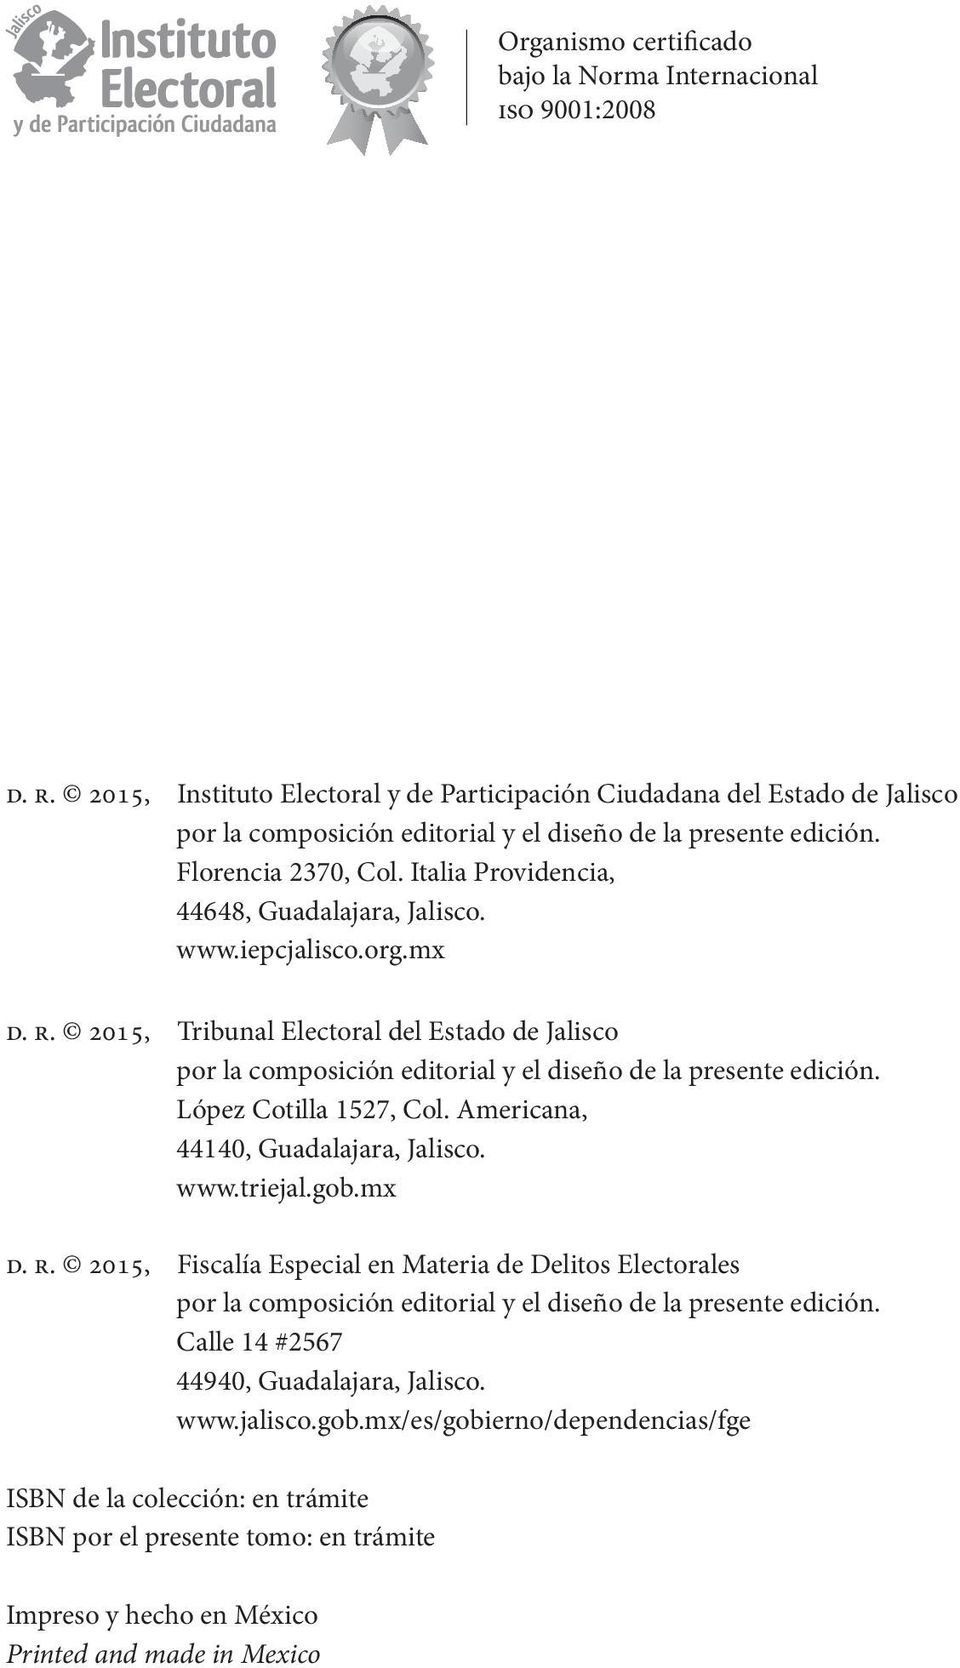 Italia Providencia, 44648, Guadalajara, Jalisco. www.iepcjalisco.org.mx d. r. 2015, Tribunal Electoral del Estado de Jalisco por la composición editorial y el diseño de la presente edición.